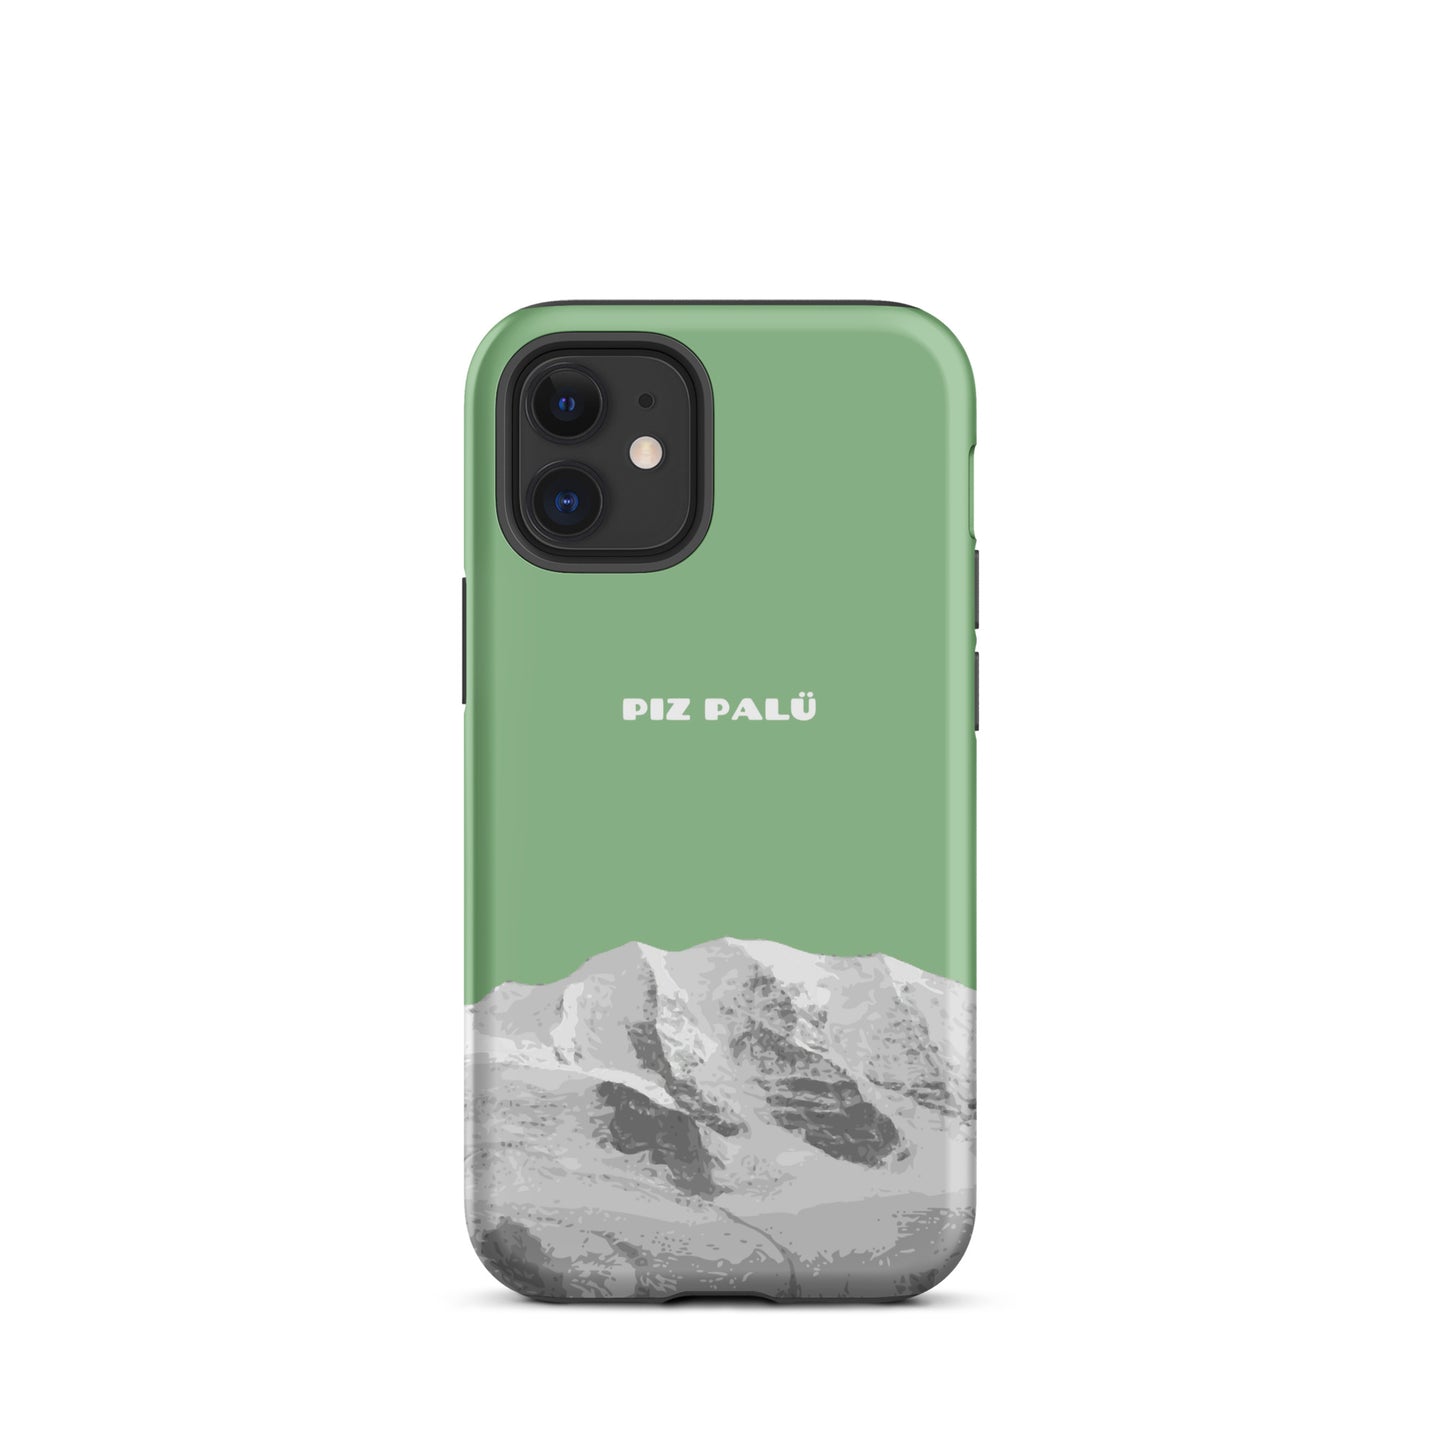 Hülle für das iPhone 12 Mini von Apple in der Farbe Hellgrün, dass den Piz Palü in Graubünden zeigt.